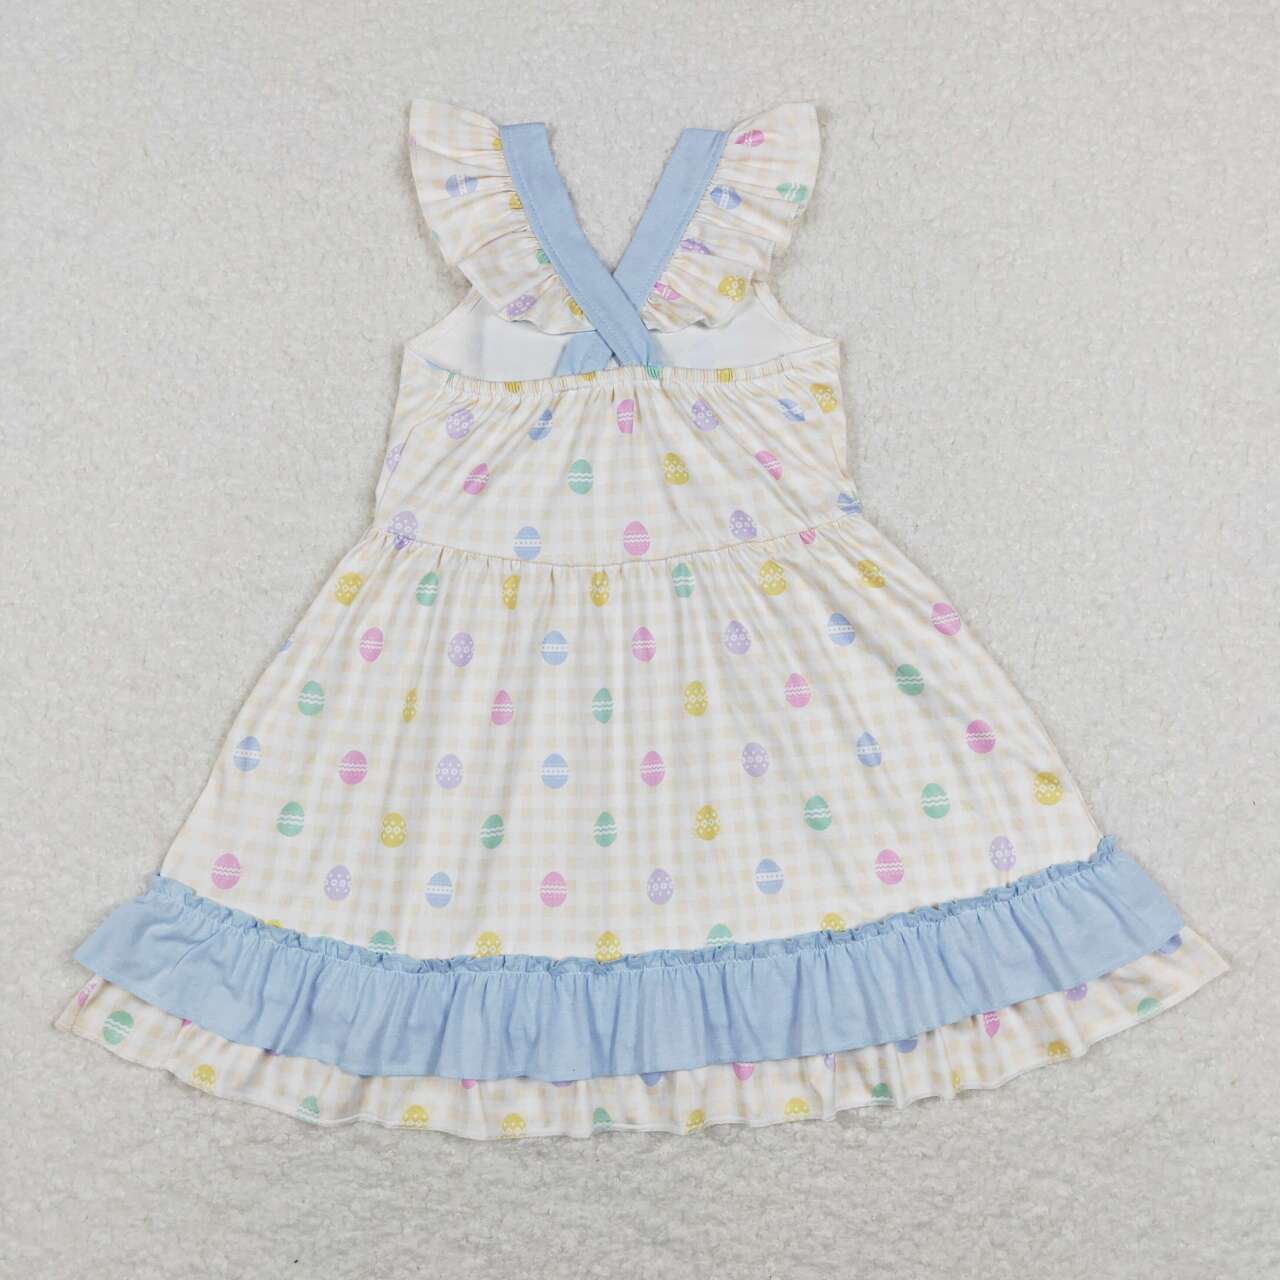 GSD0582 Egg Print Bow Girls Knee Length Easter Dress